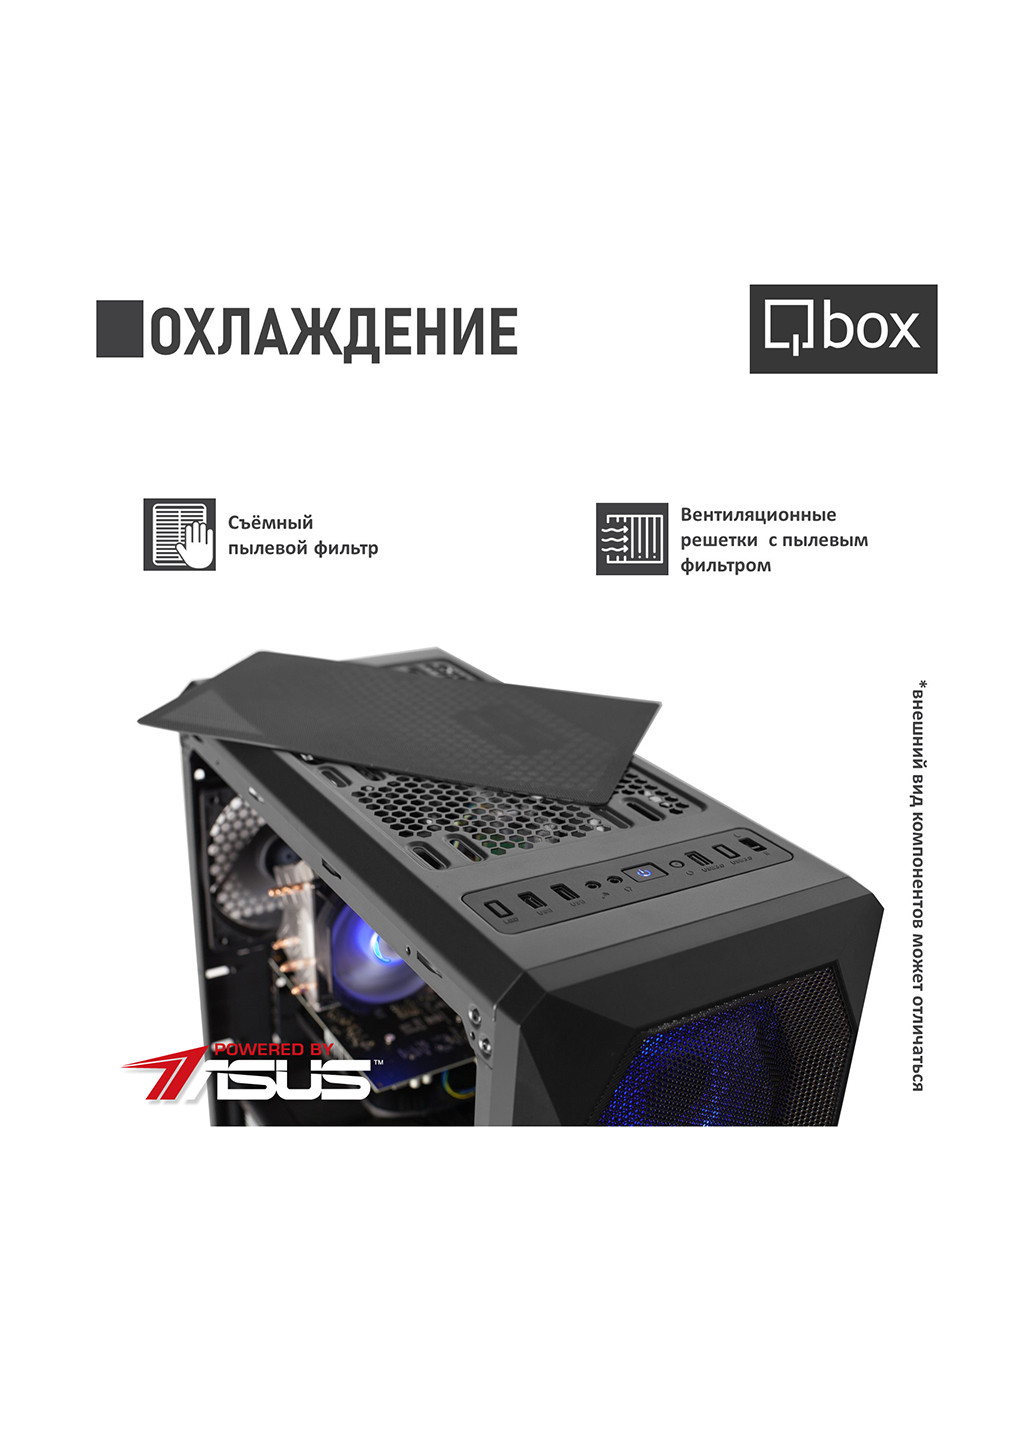 Комп'ютер I3671 Qbox qbox i3671 (131396742)